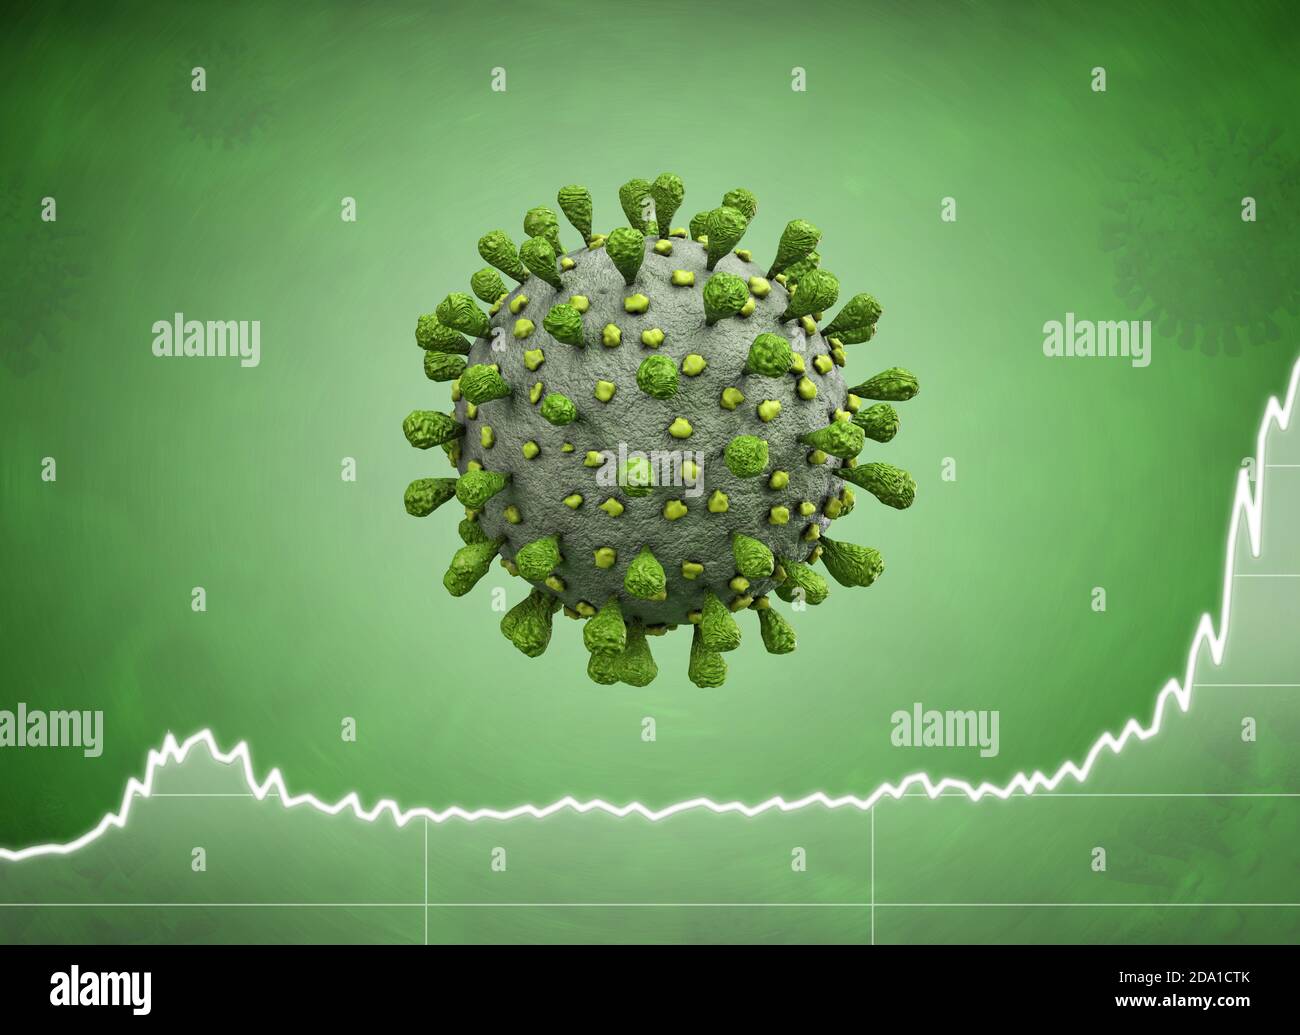 Rendu 3d du coronavirus vert ou du virus de la grippe avec données statistiques la deuxième vague monte Banque D'Images